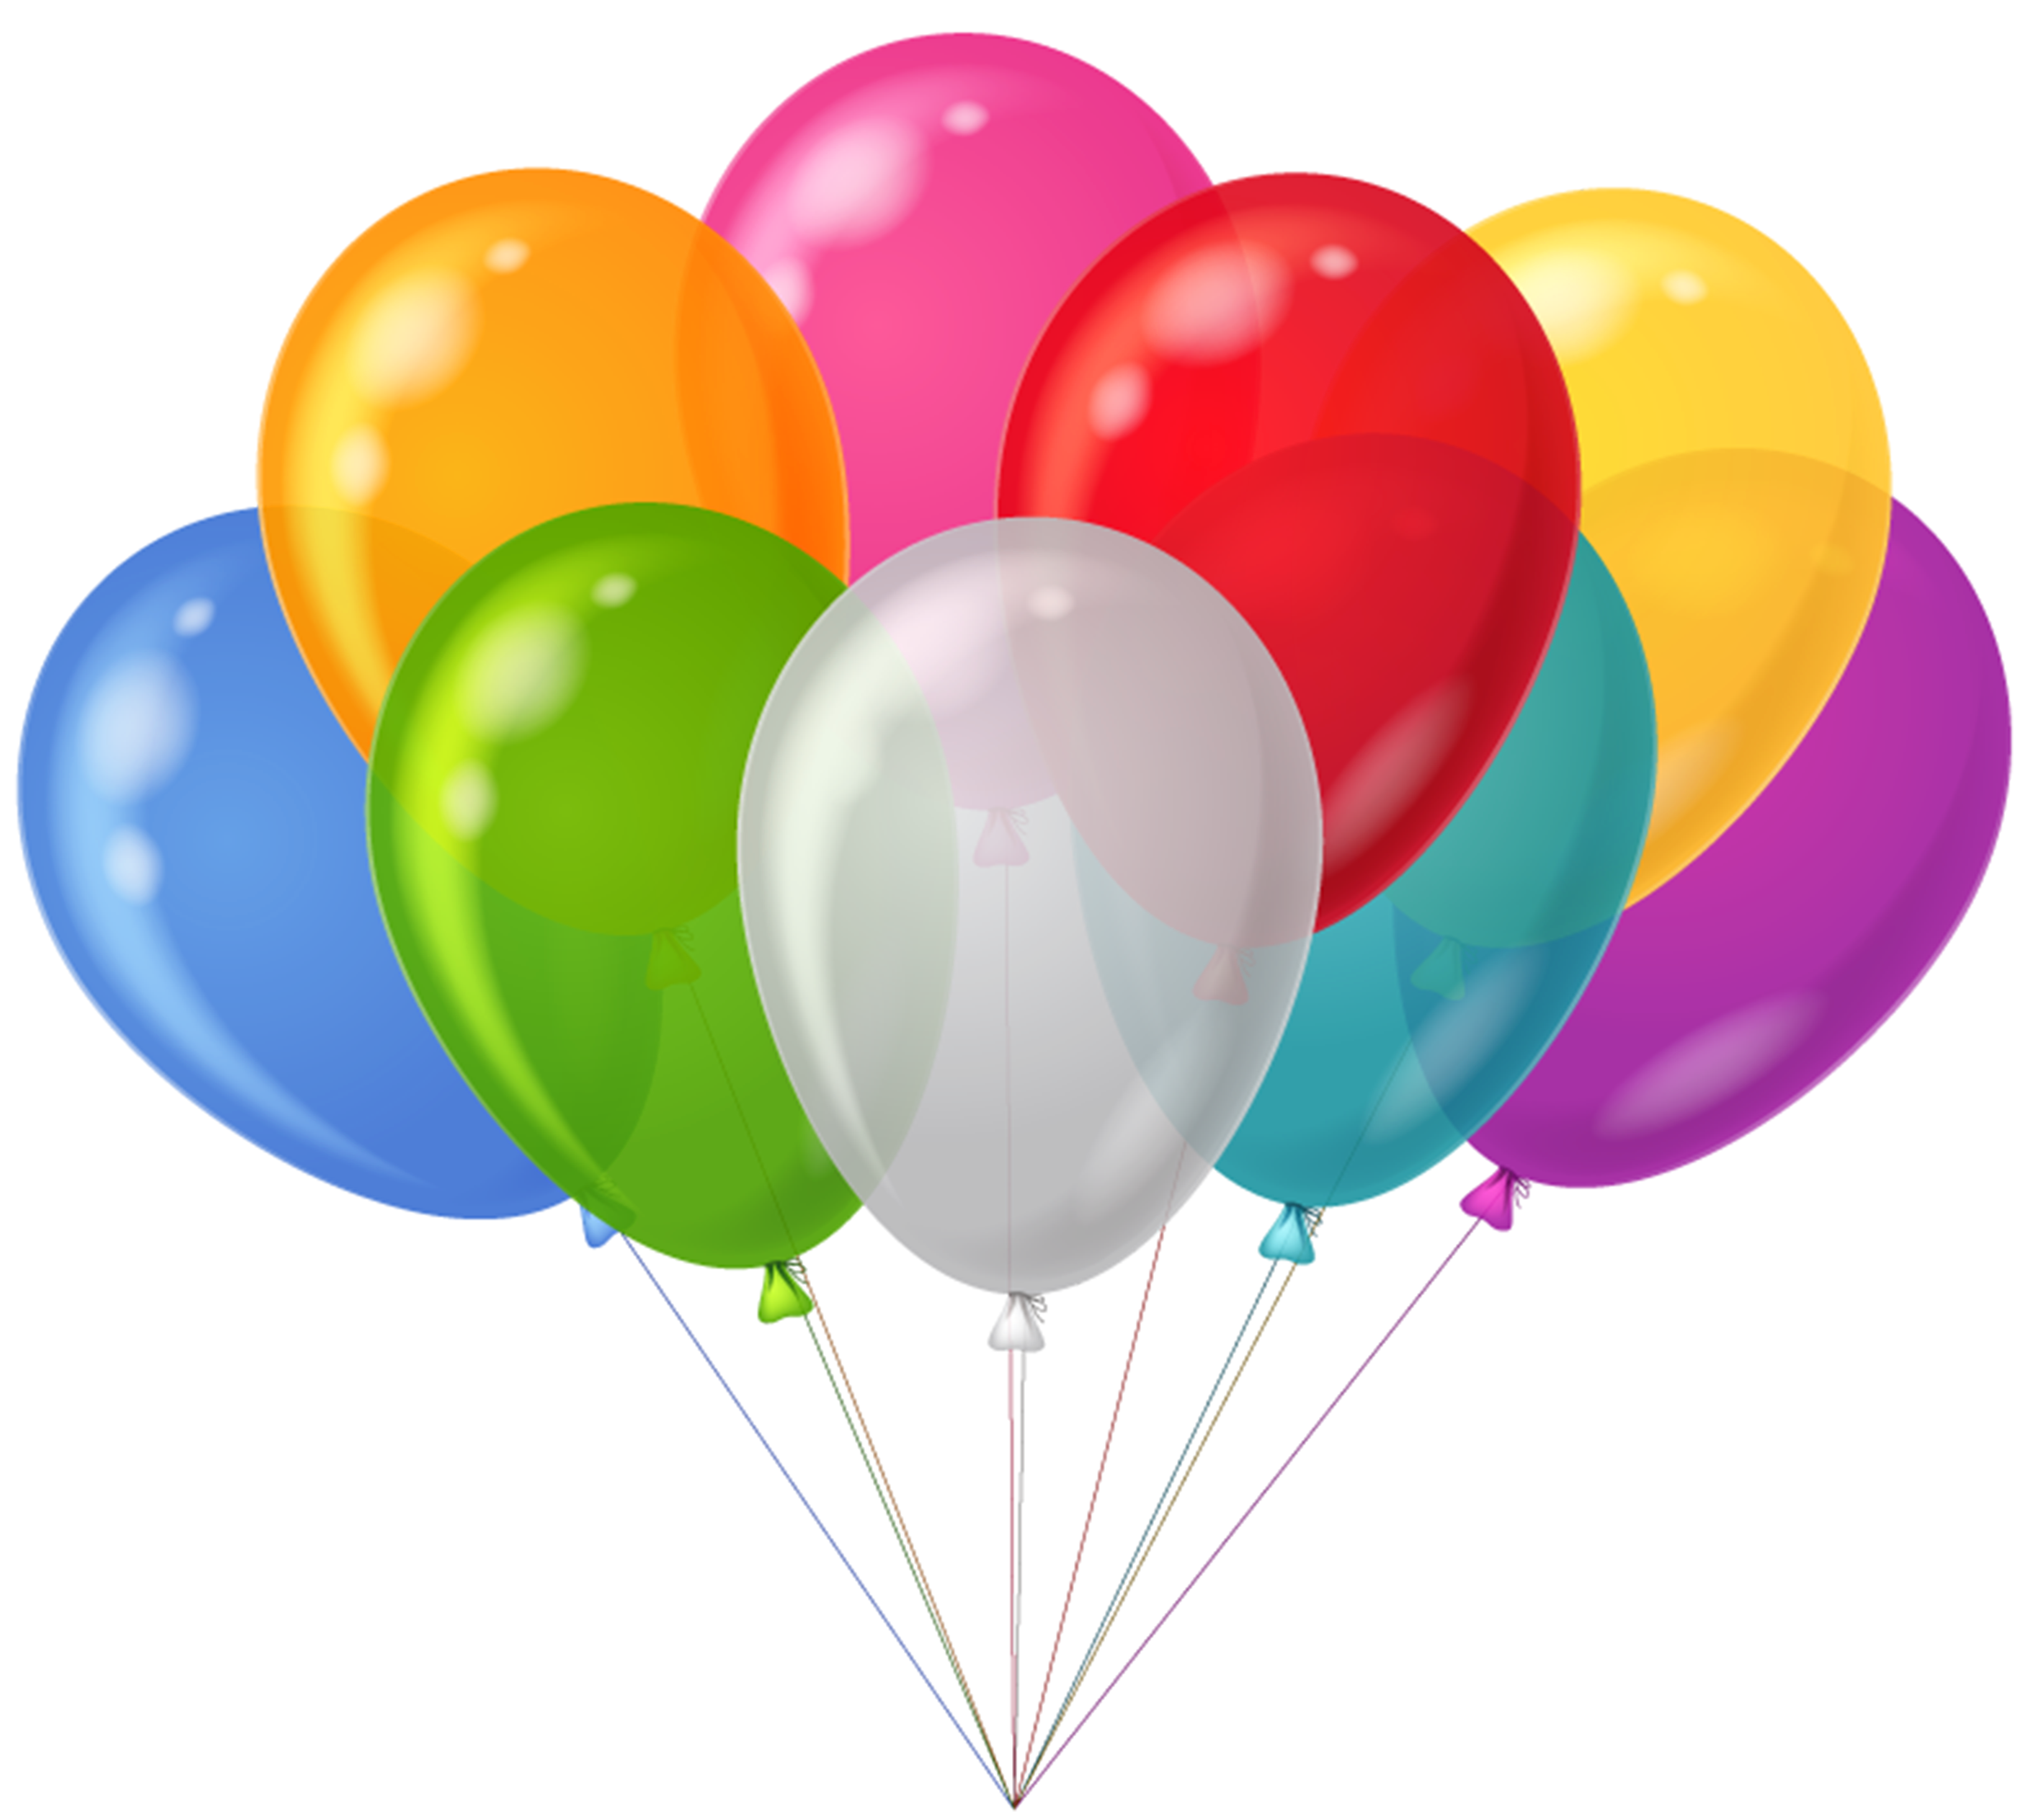 Balloons Clip Art Free - ClipArt Best